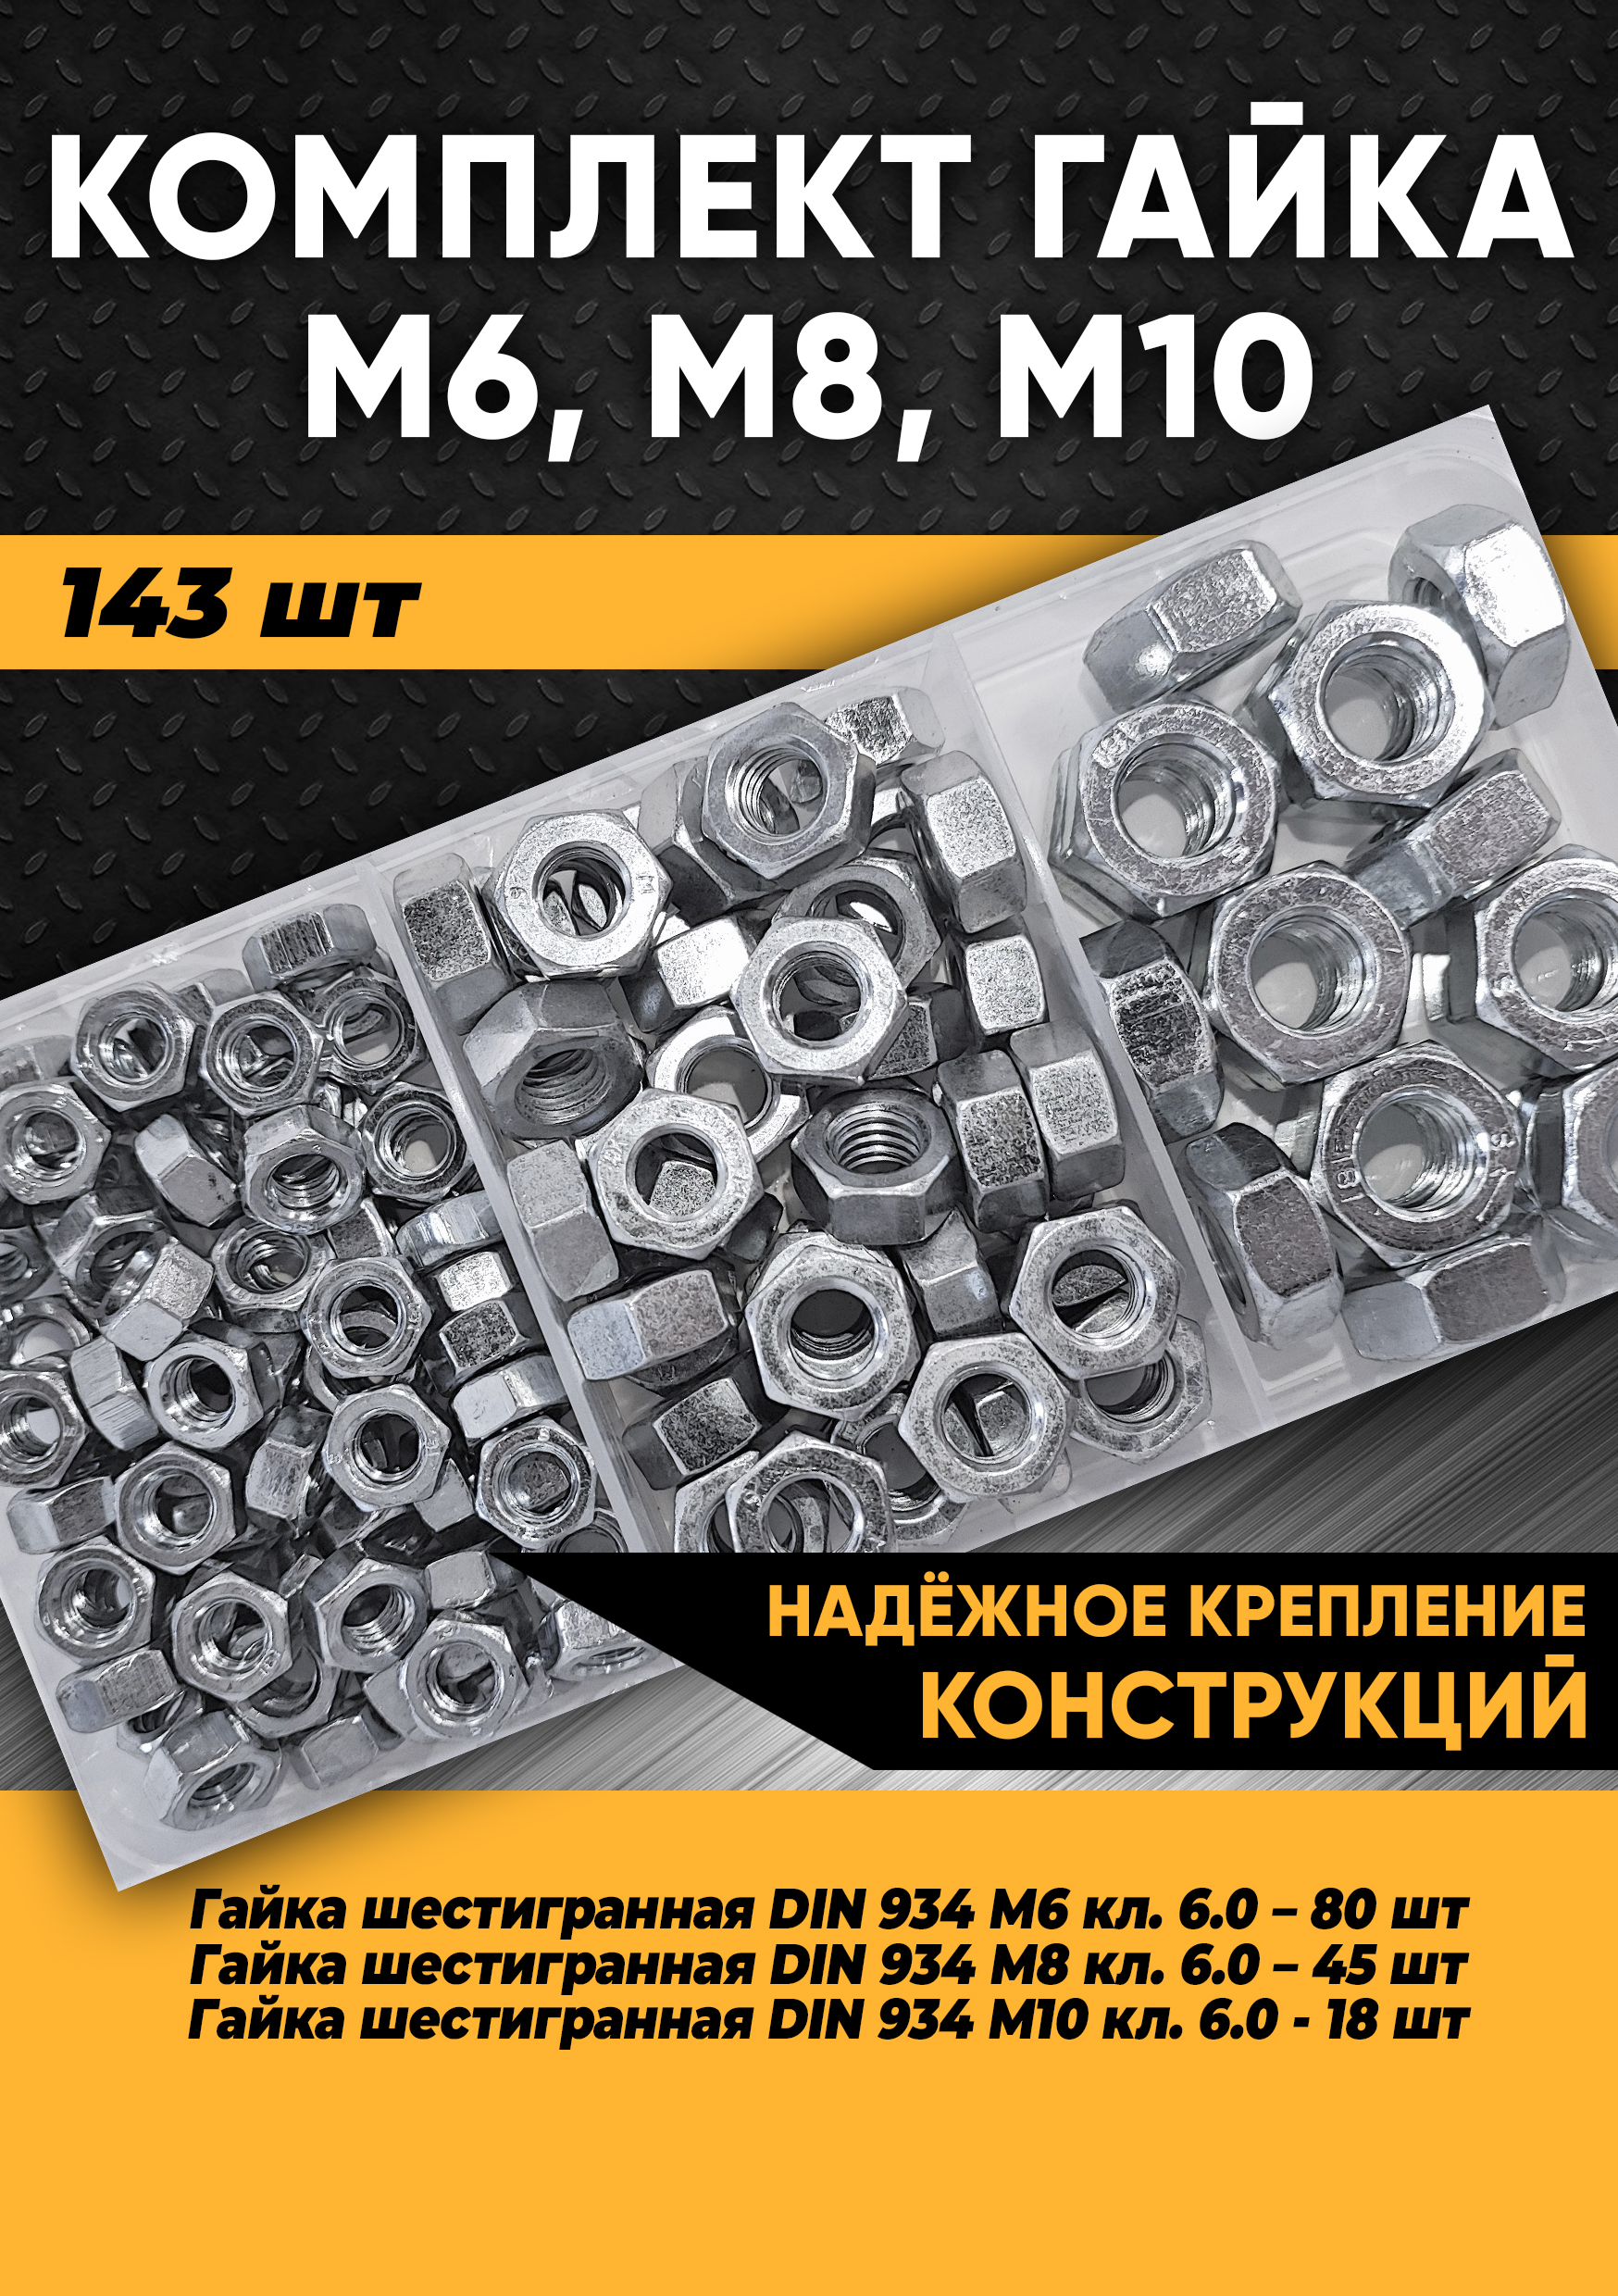 Комплект гайка М6, М8, М10 - 143 шт. в органайзере, KraSimall 100275